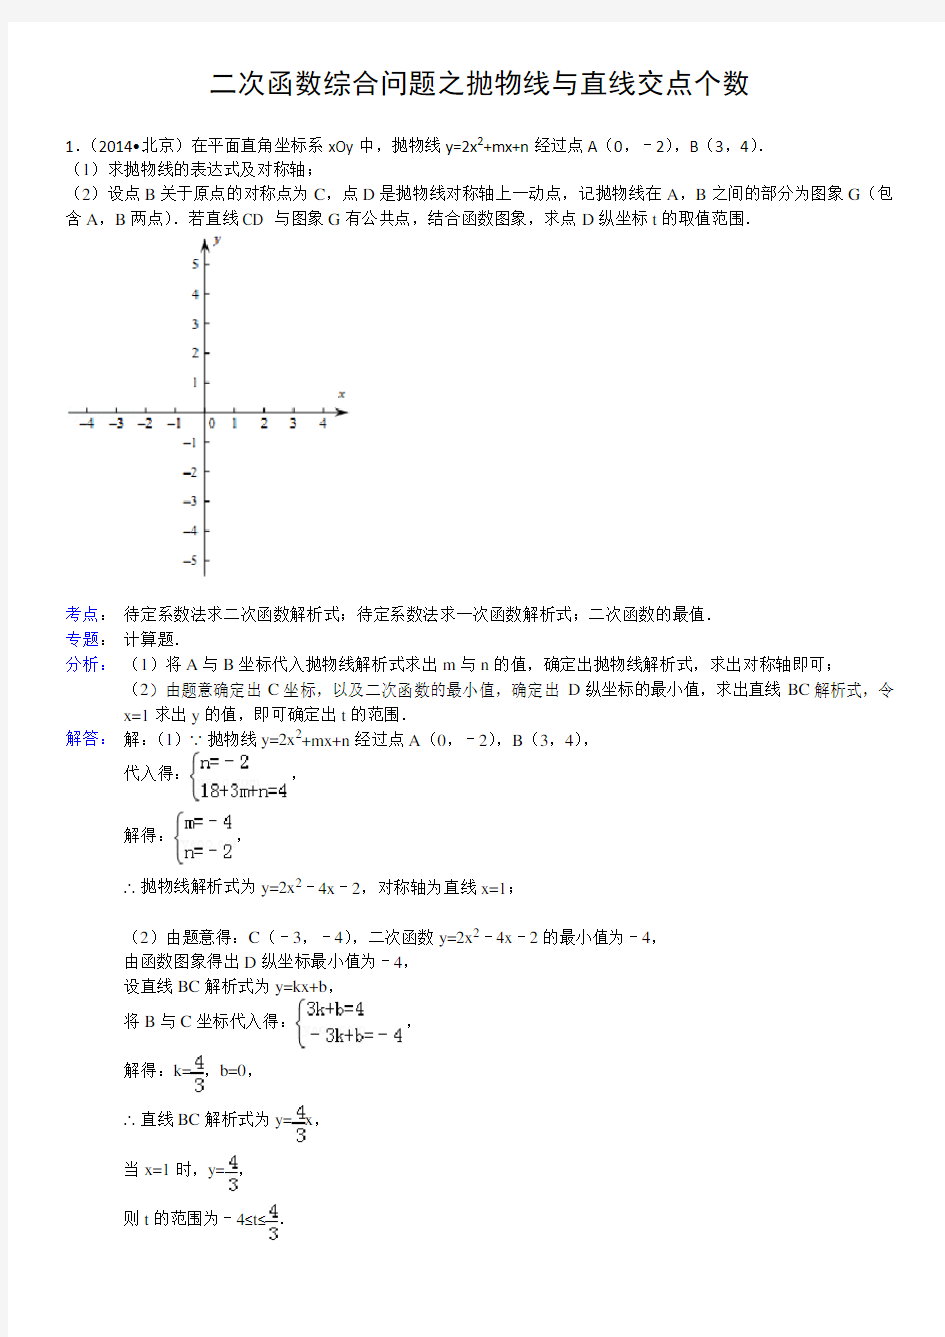 (完整版)二次函数综合问题之抛物线和直线交点个数问题